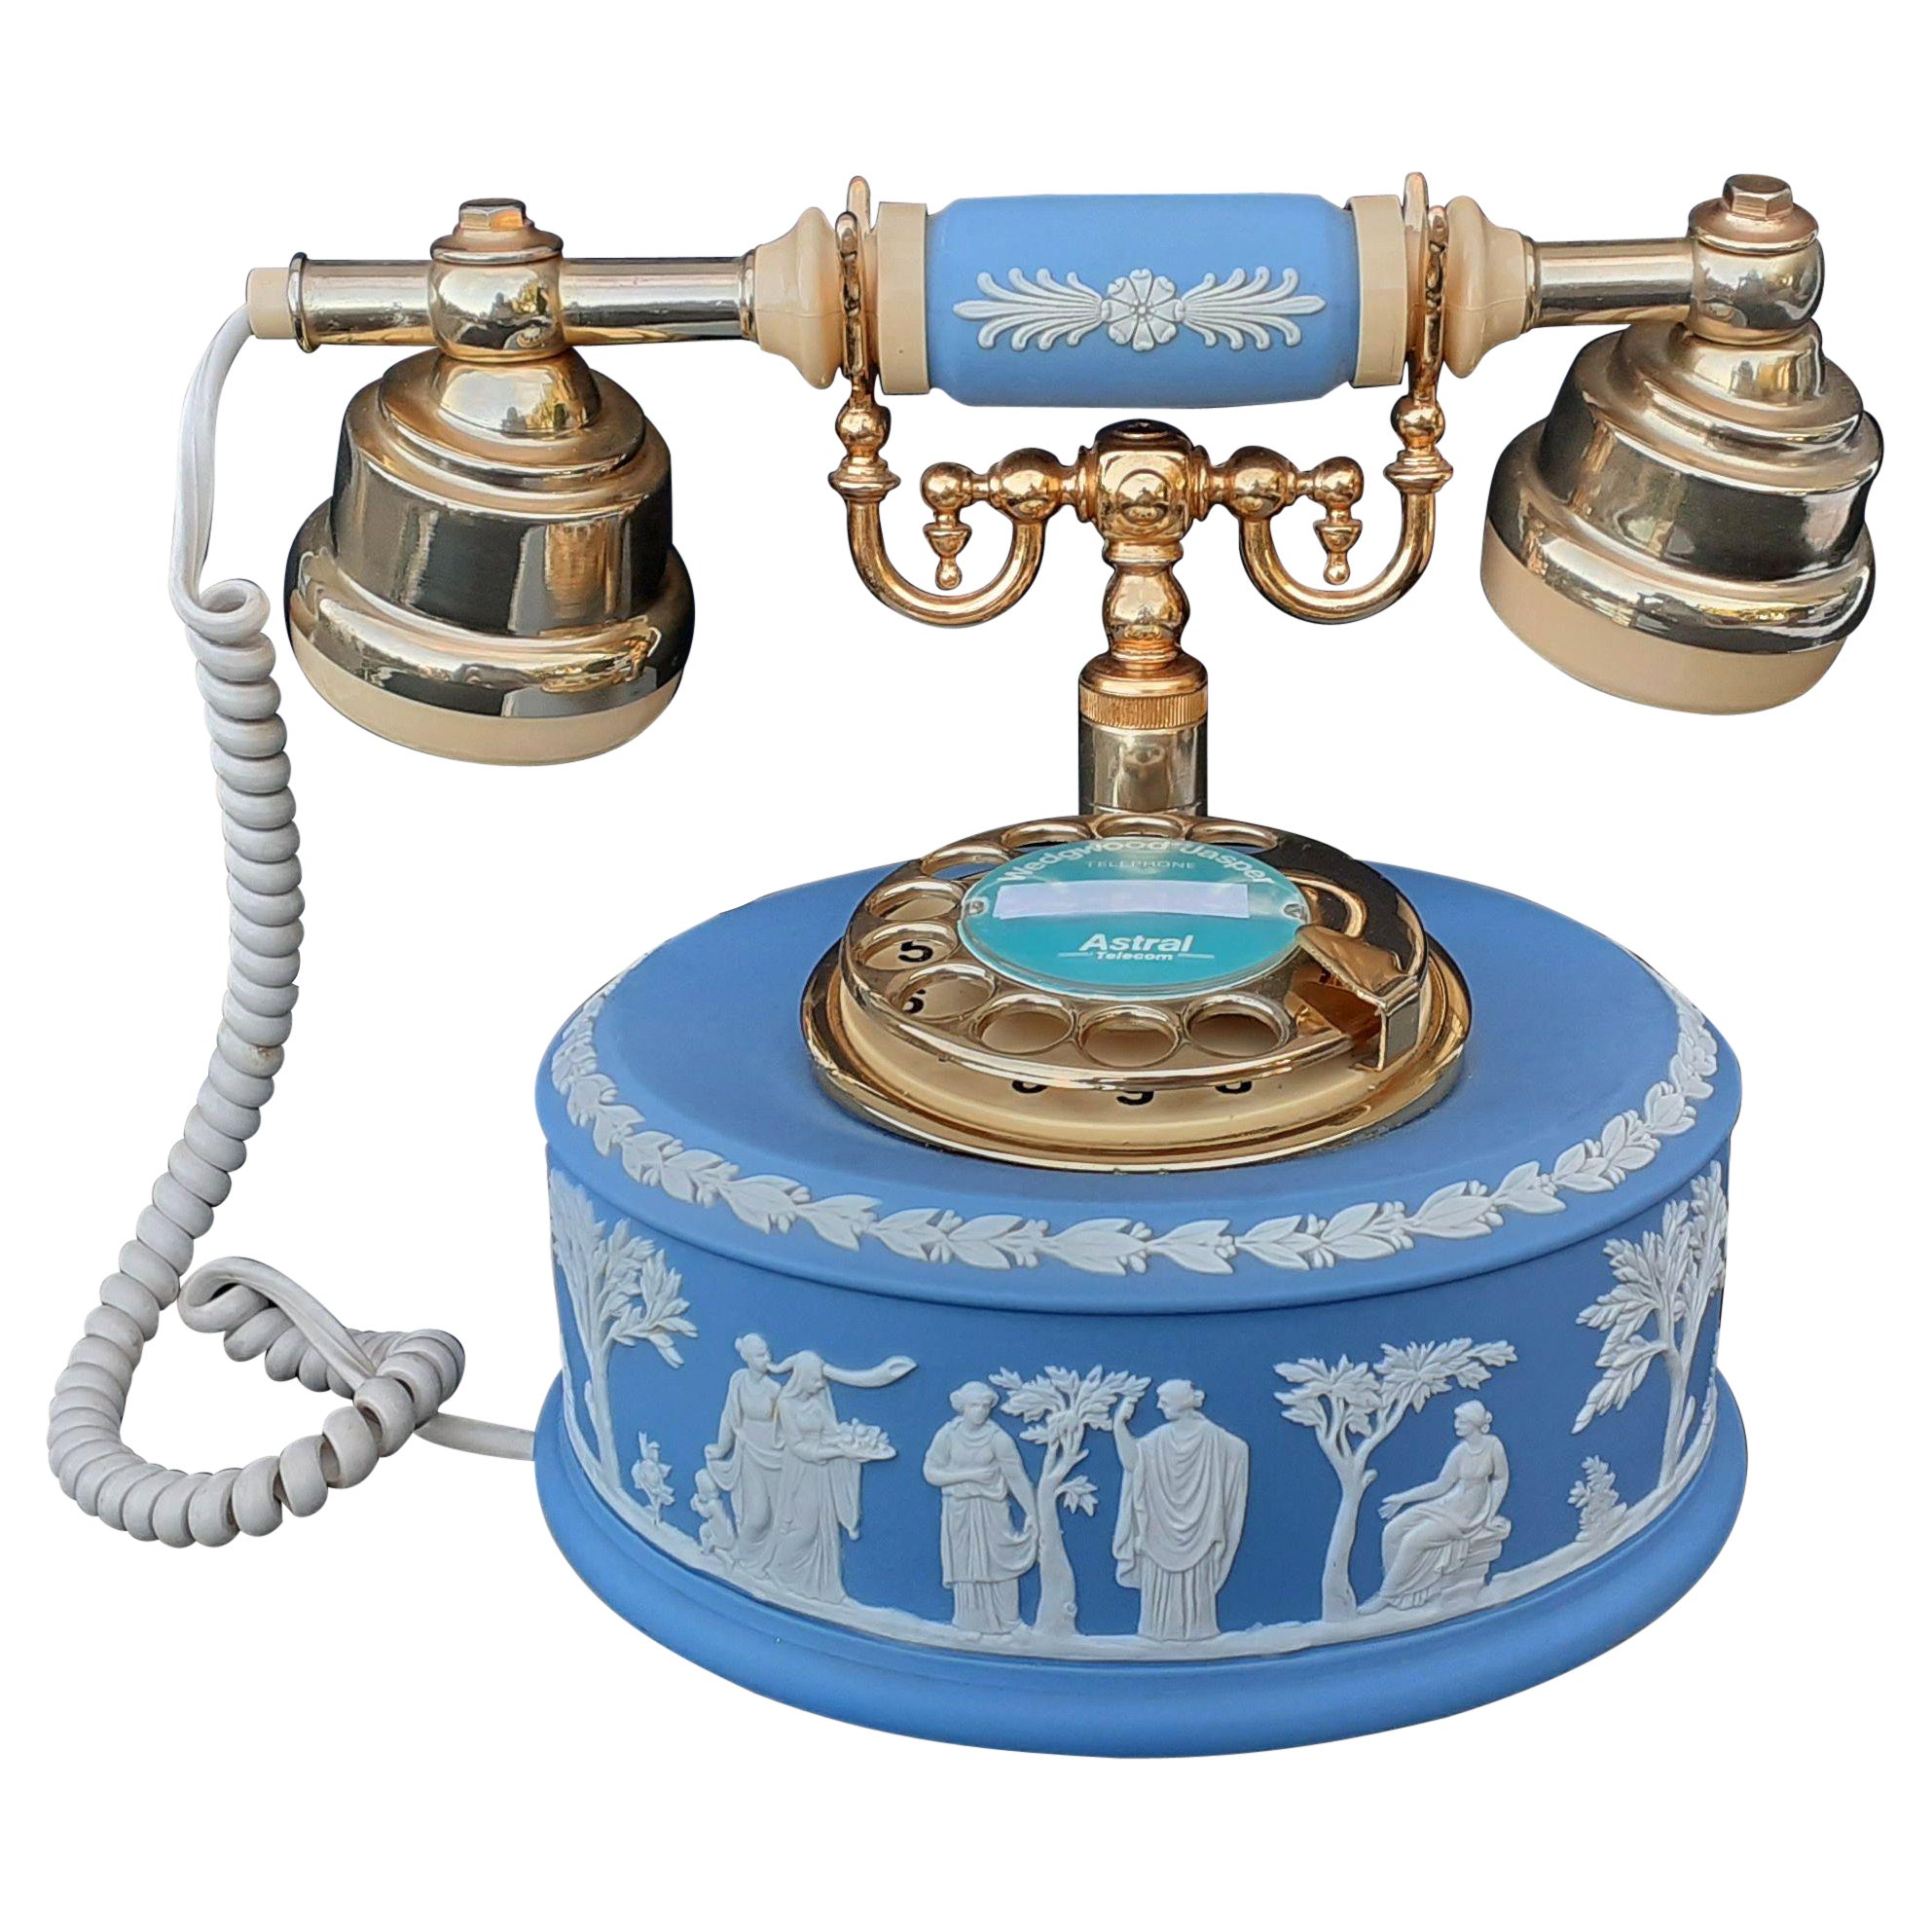 RARE cadran de téléphone Wedgwood Rotary vintage Astral bleu en jaspe, collectionneur de téléphone